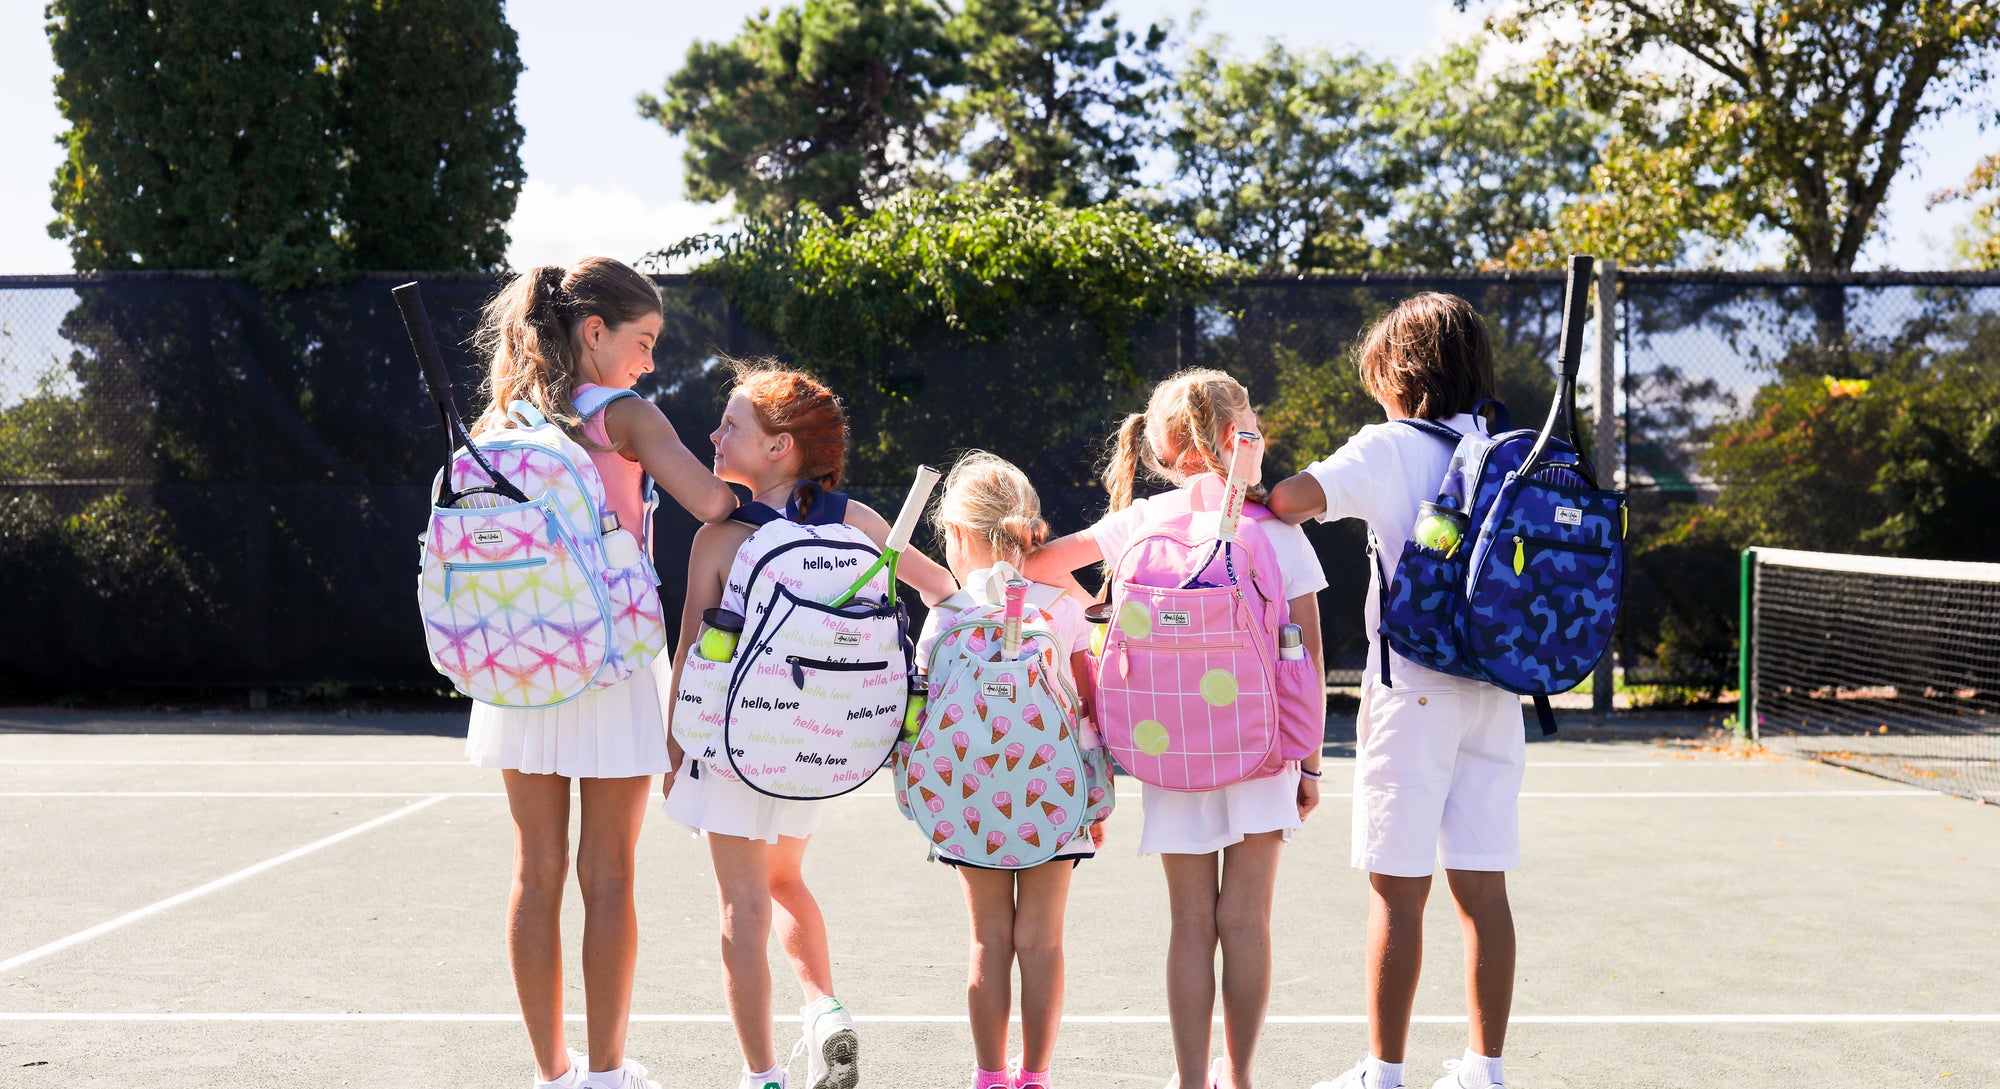 Melbie Tennis Backpack / Tote